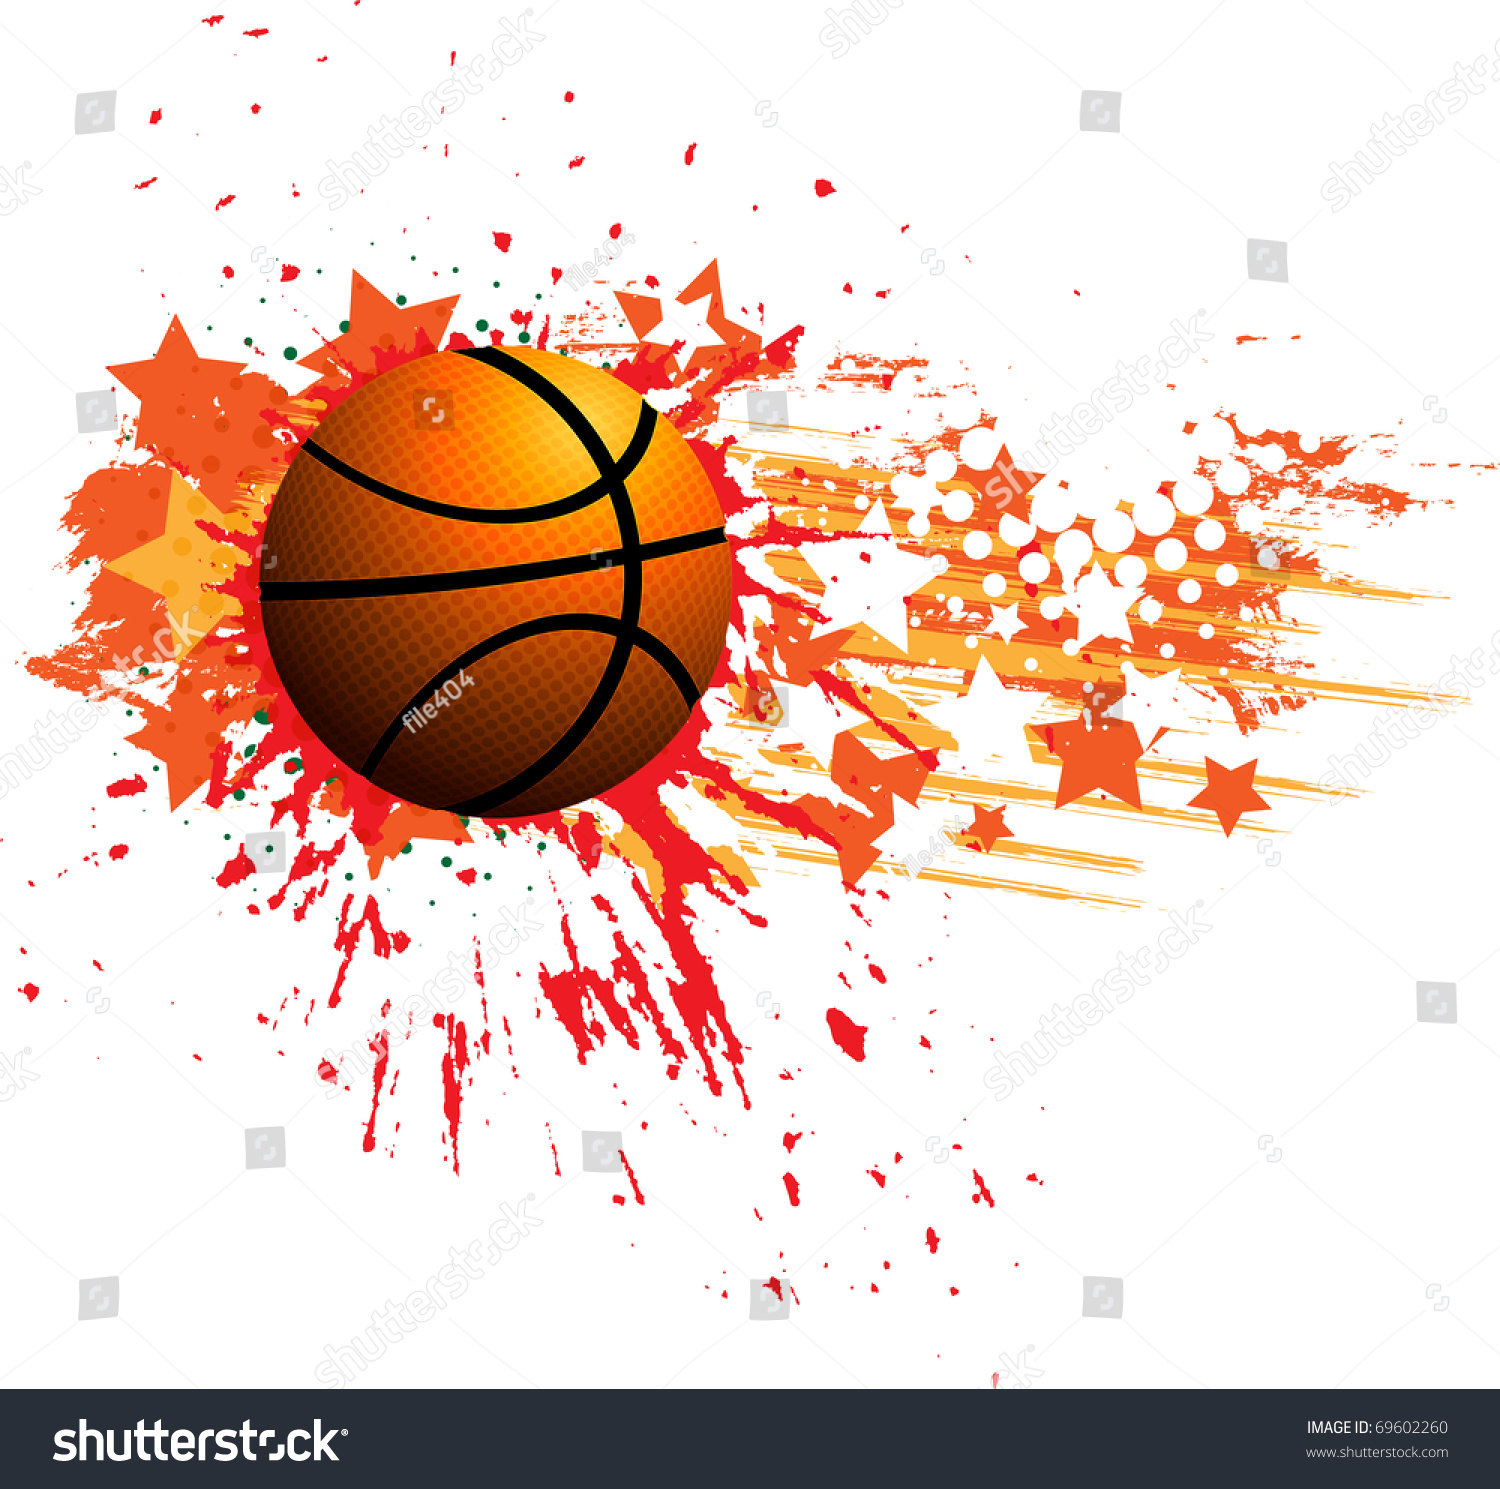 Баскетбольный мяч без надписей